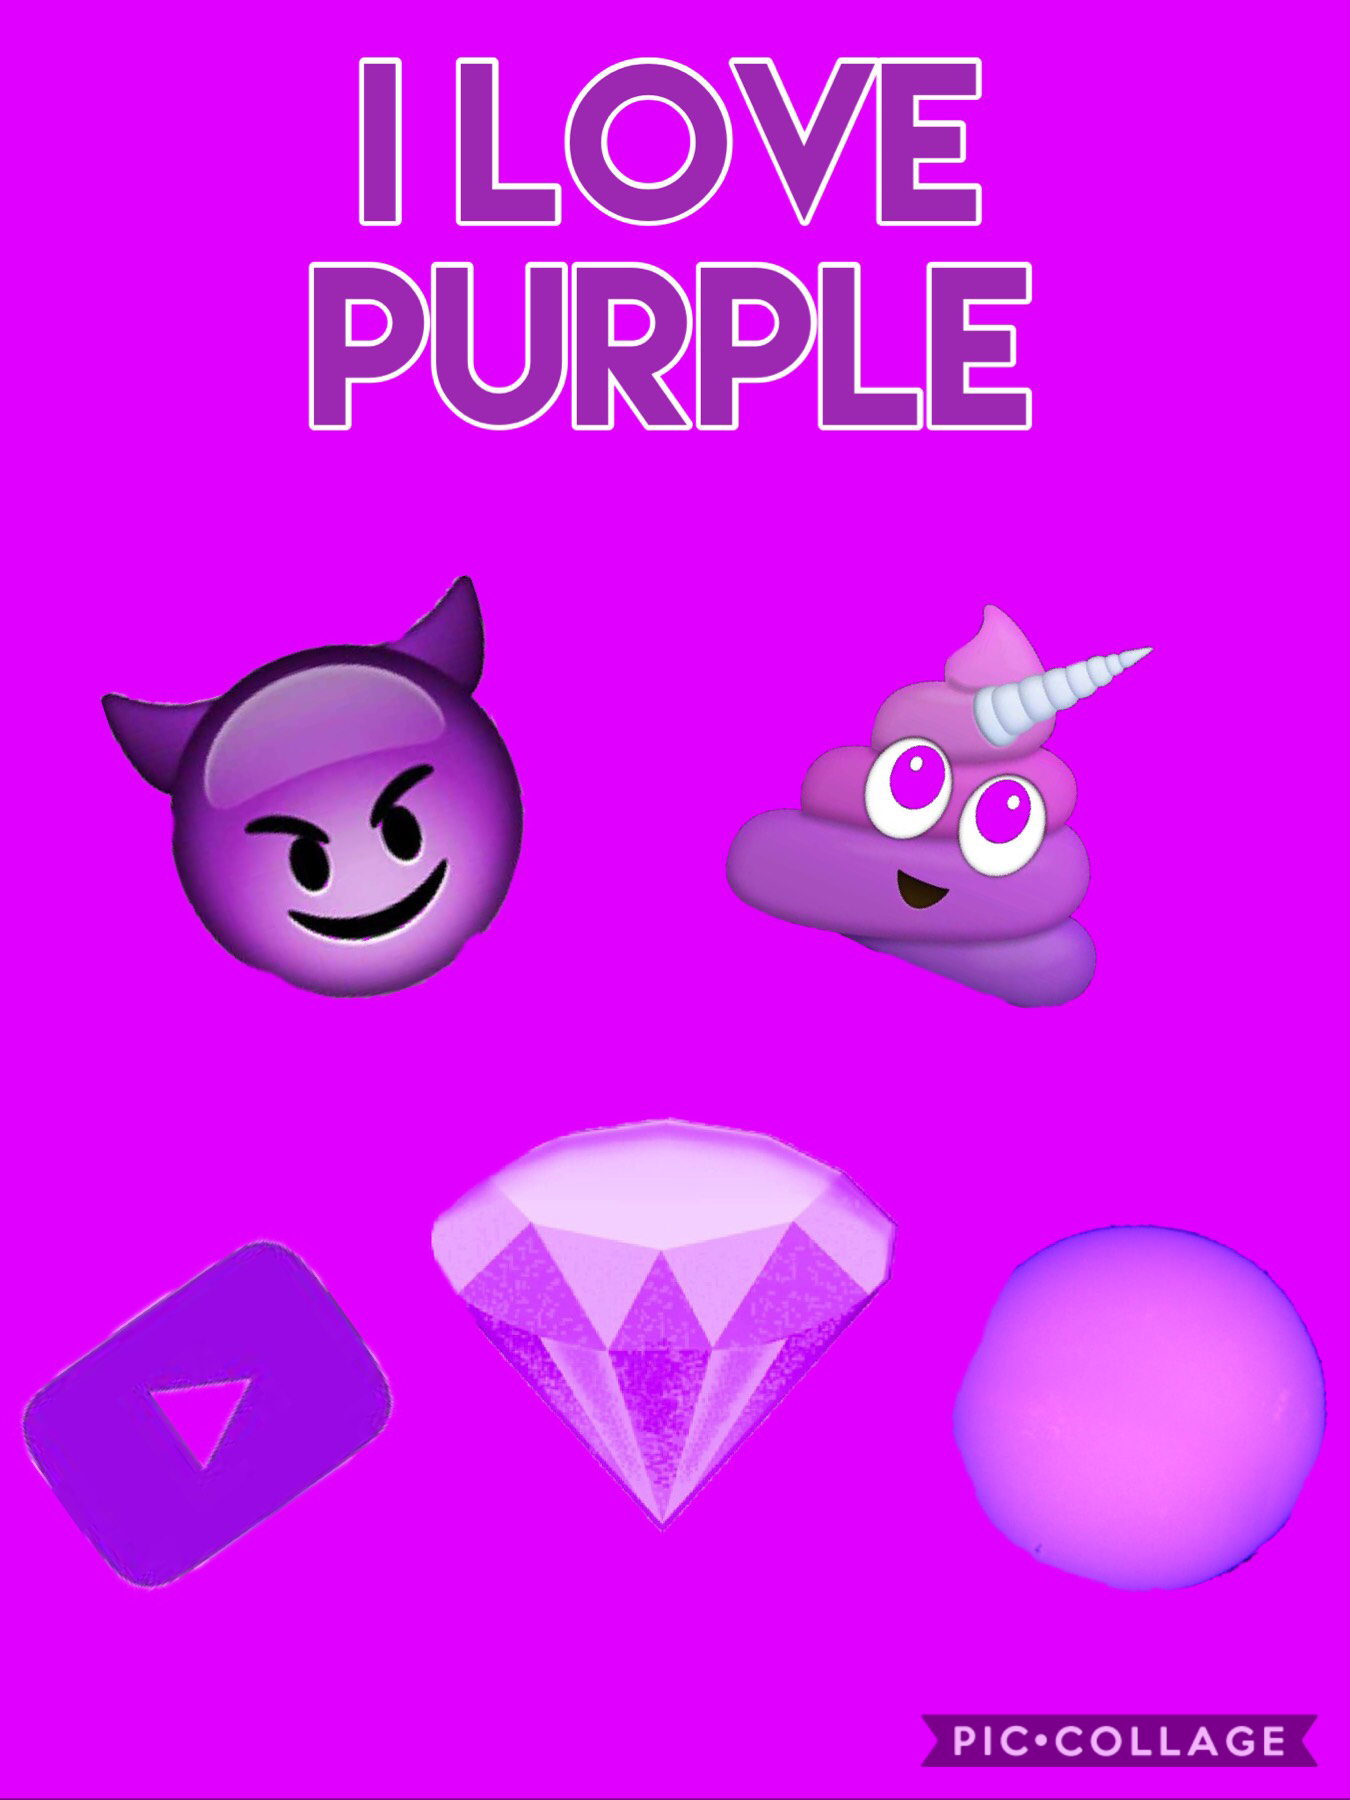 Purple right